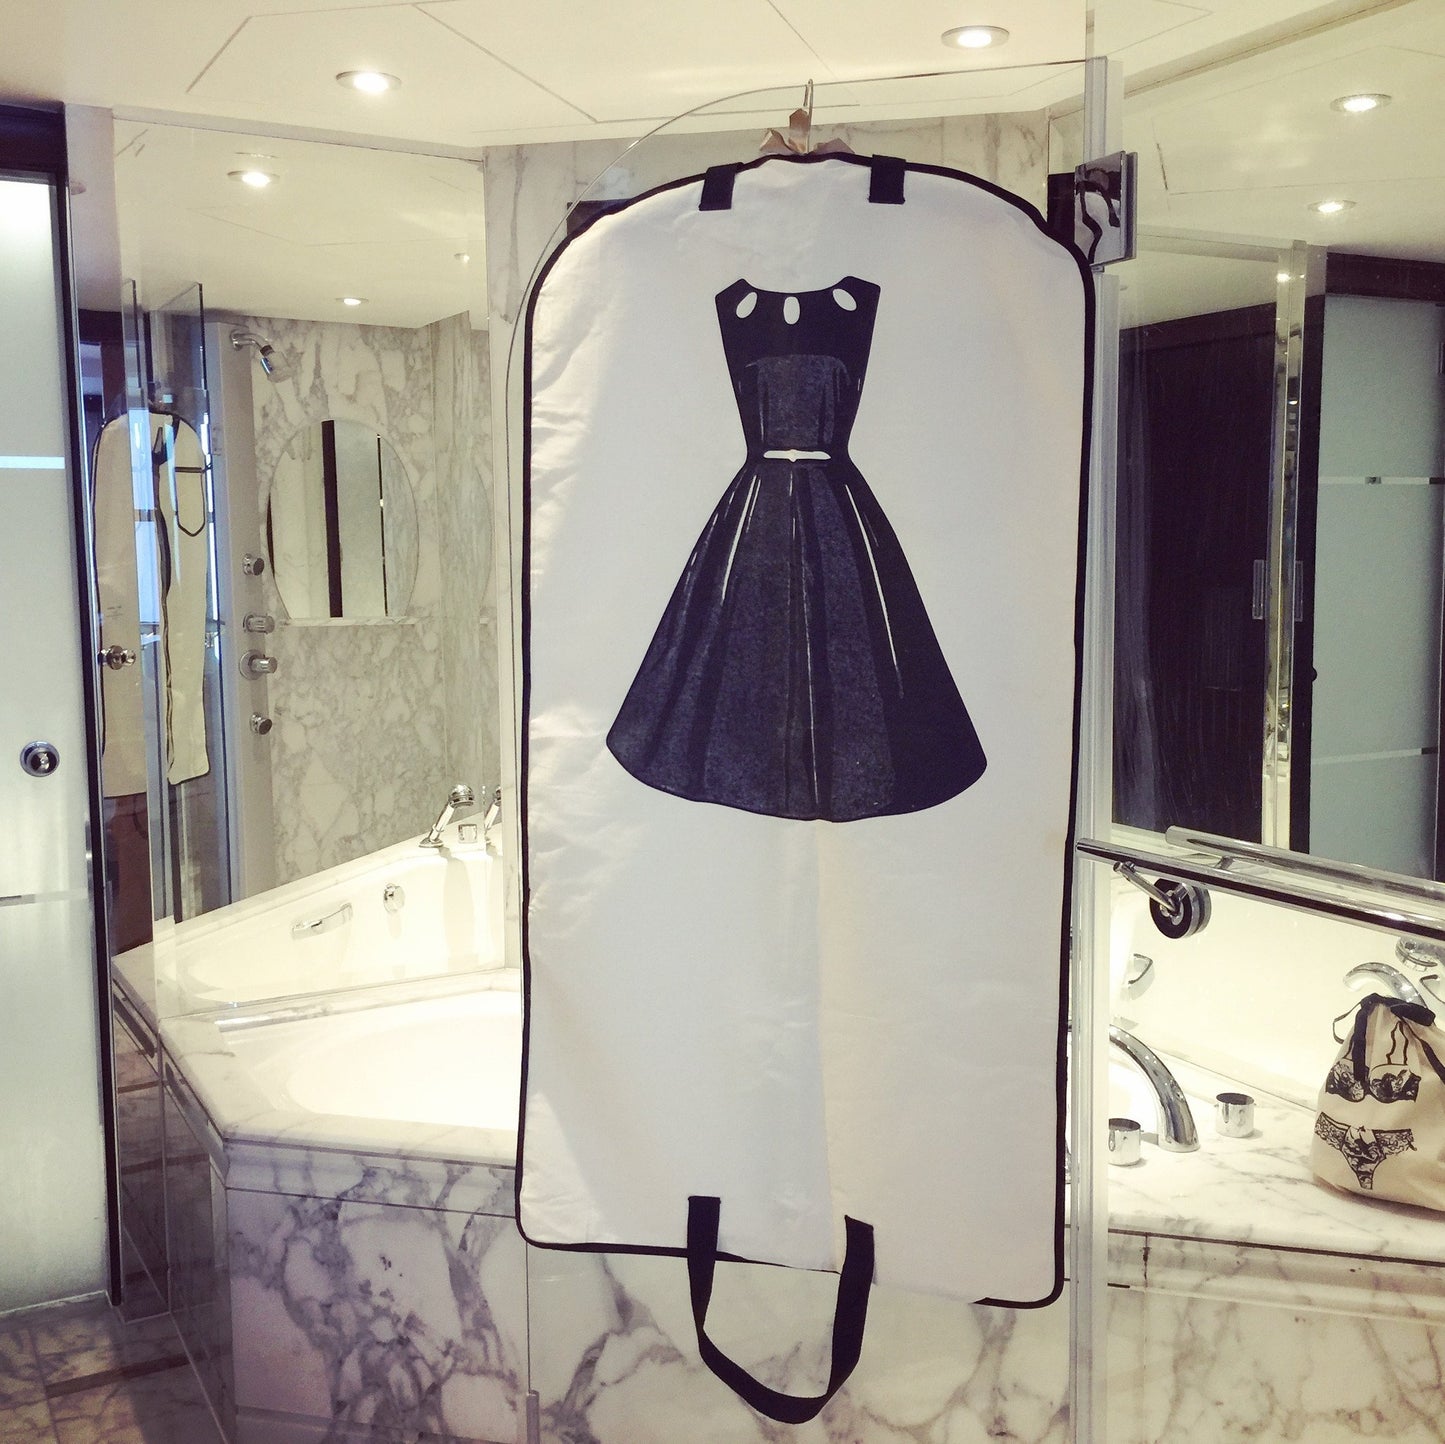 
                                      
                                        Une salle de bains en marbre avec une robe de sac à vêtements LBD accrochée à la douche.
                                      
                                    